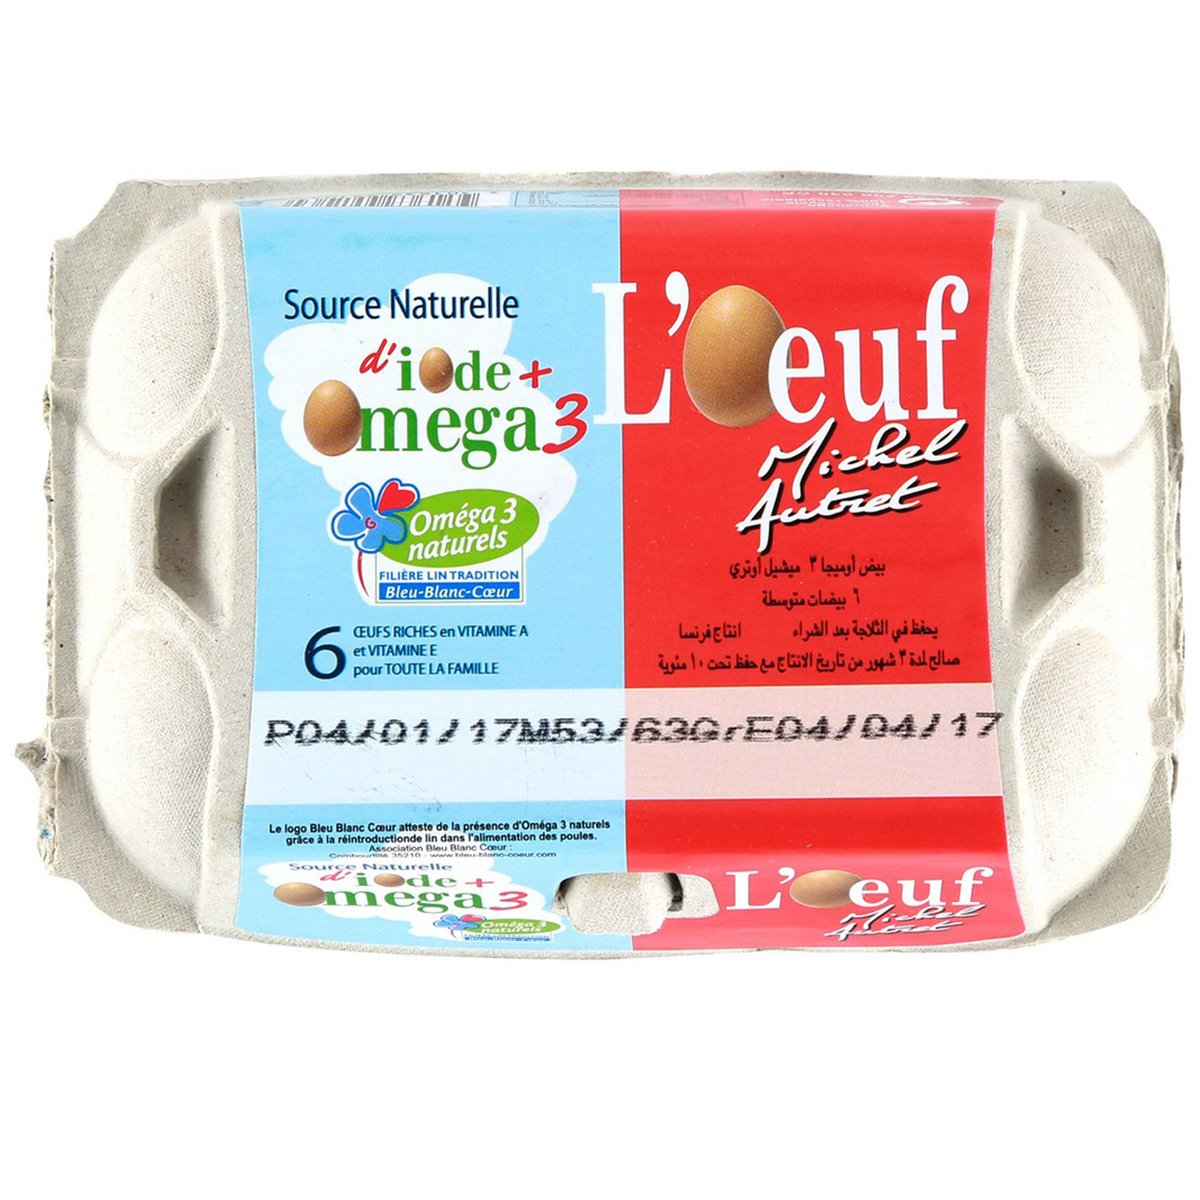 Autret Omega Naturals Egg 6pcs